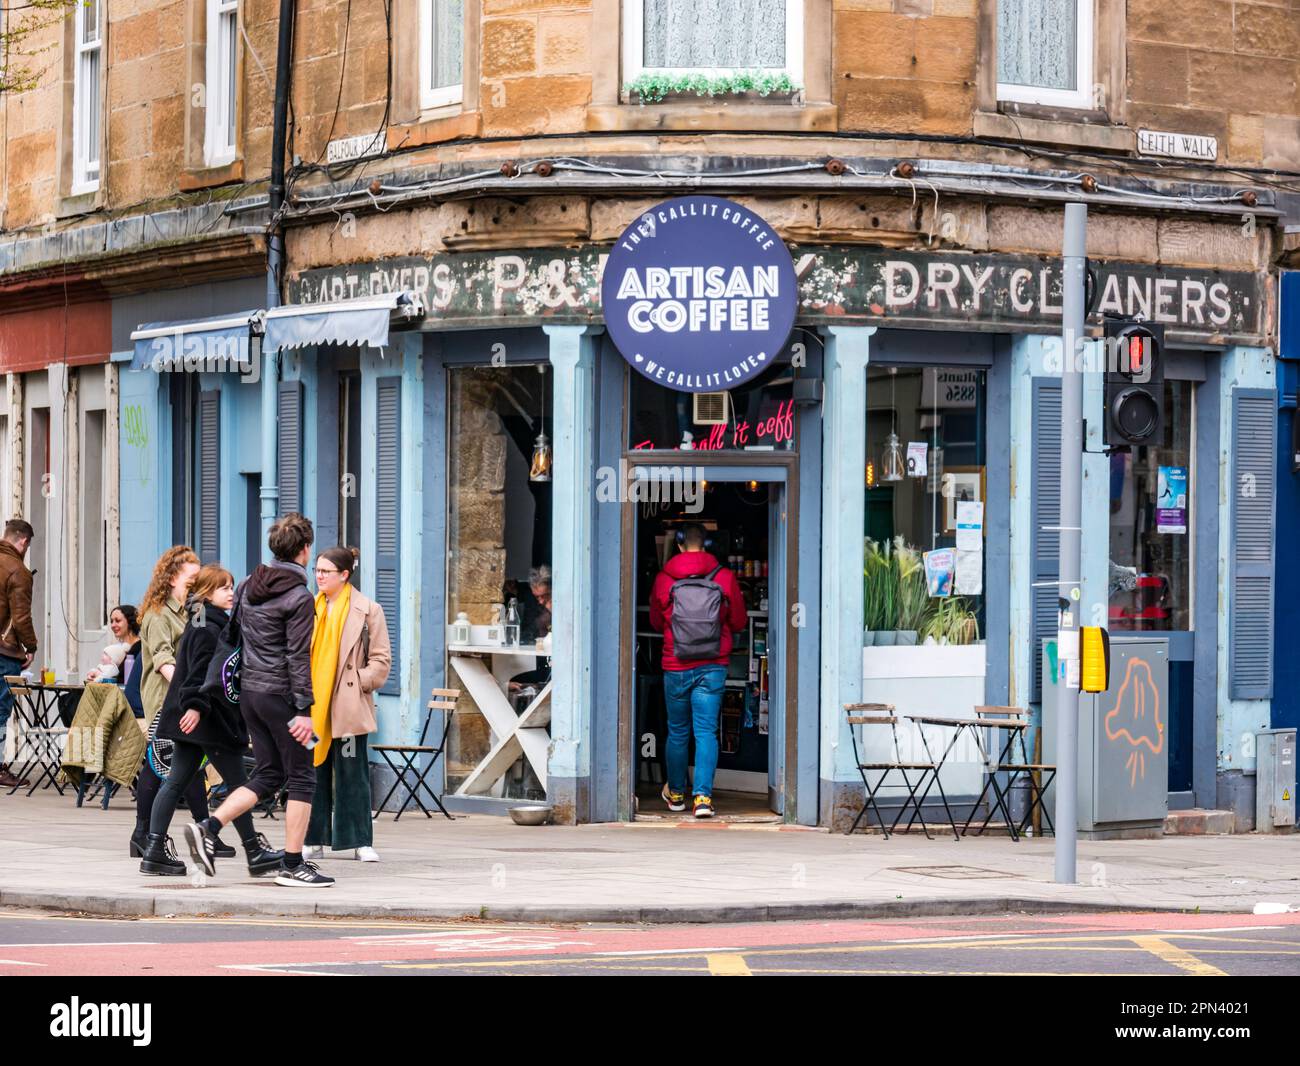 Personnes aux tables de pavement dans un café artisanal avec panneau fantôme de nettoyage à sec, leith Walk, Édimbourg, Écosse, Royaume-Uni Banque D'Images